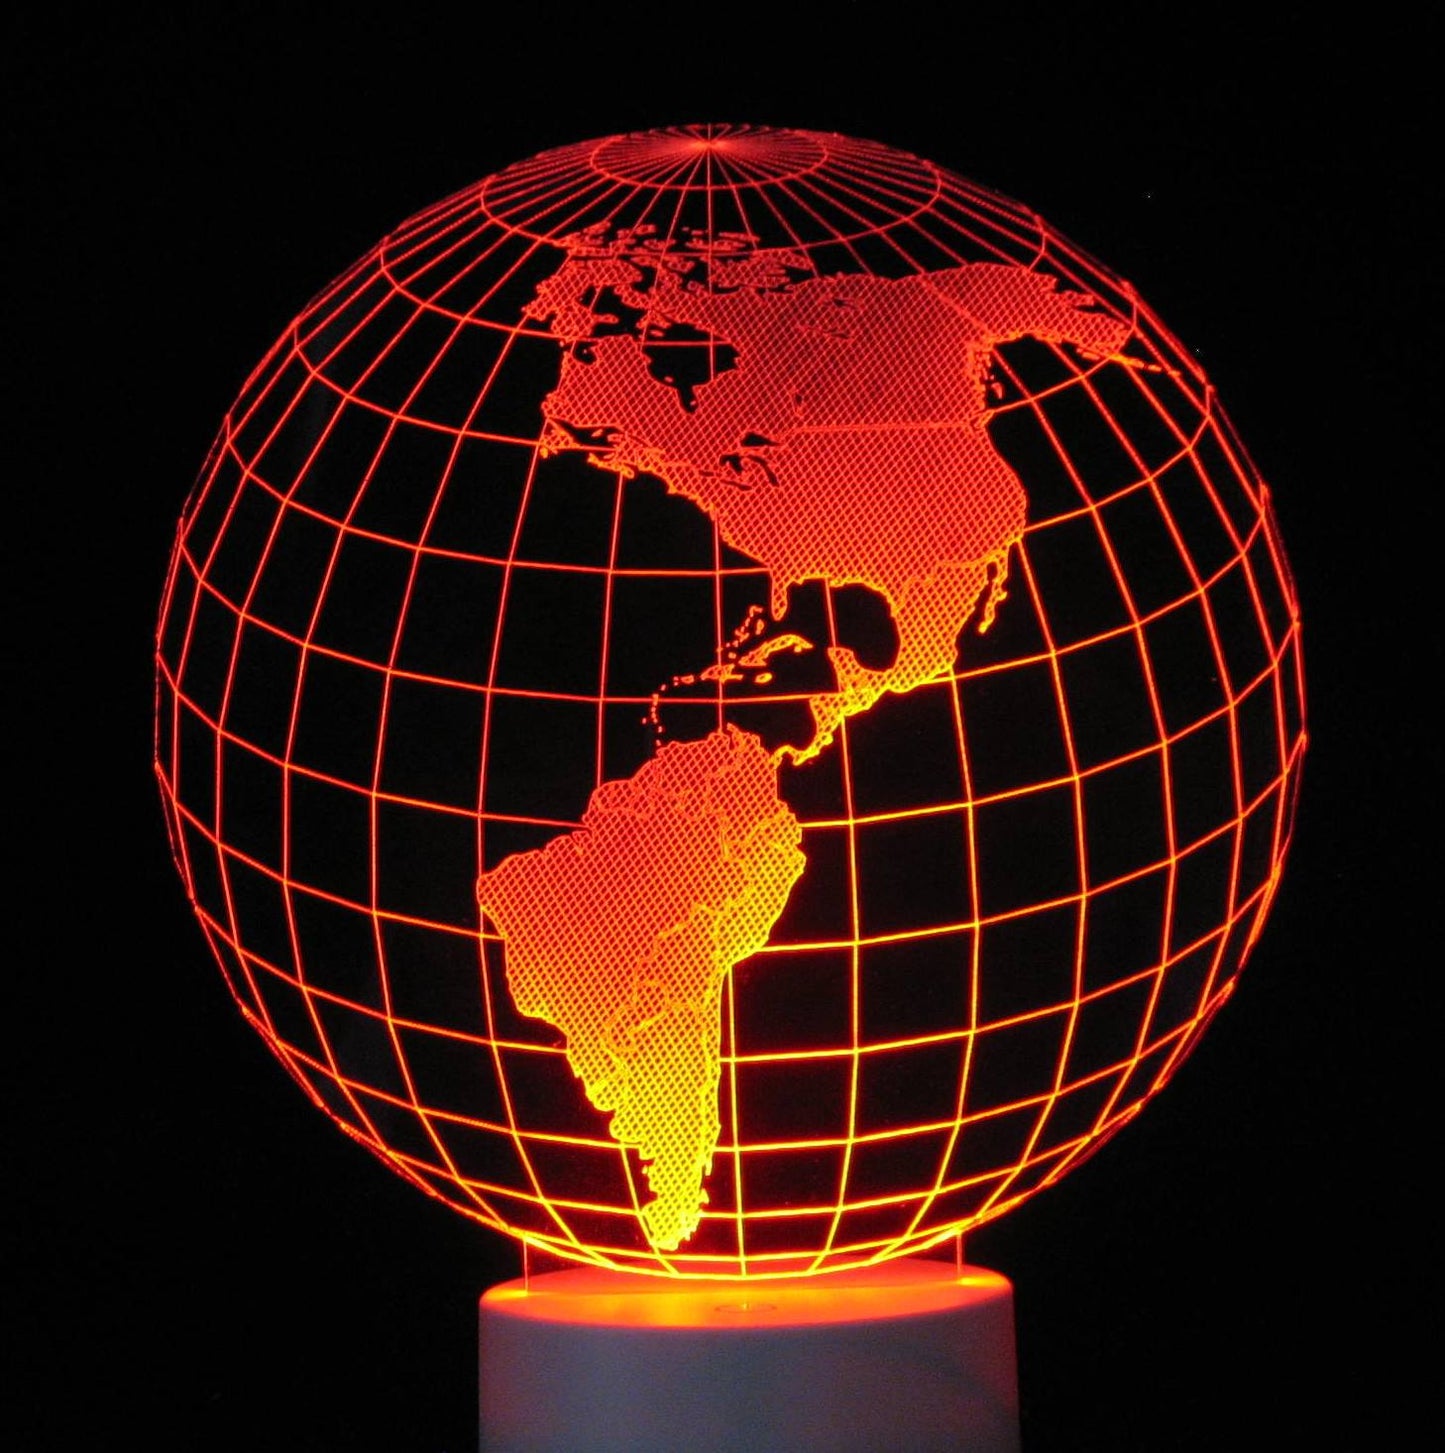 Globe North America 3-D Optical Illusion Multicolored Light